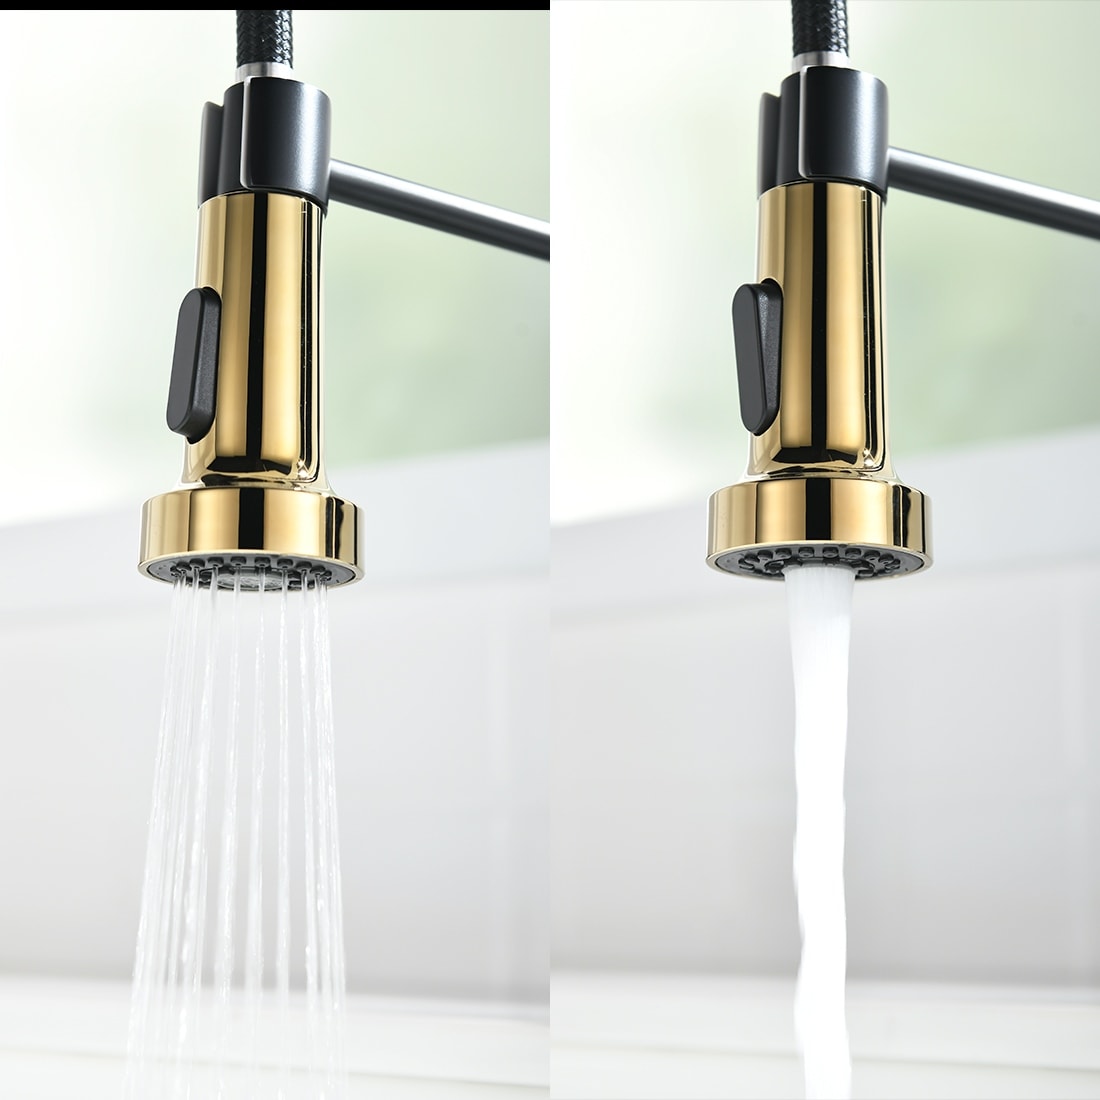 Details about   Black/Gold/Silver Kitchen Sink Spout 360° Swivel Mixer Faucet Single Handle Taps 